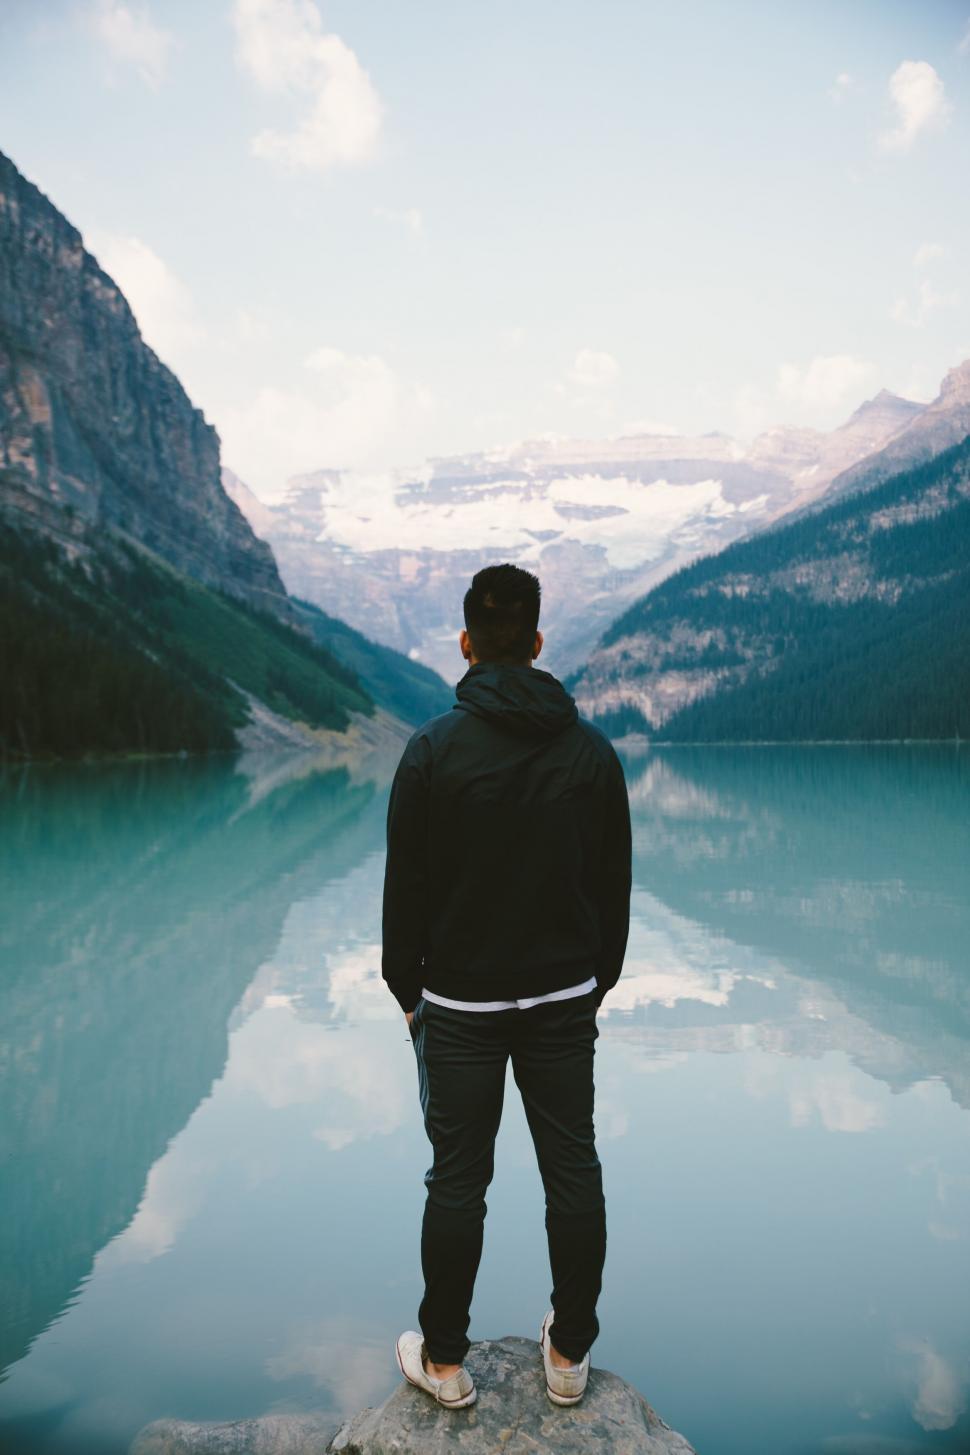 Free Image of Man gazing at mountain lake from rock 